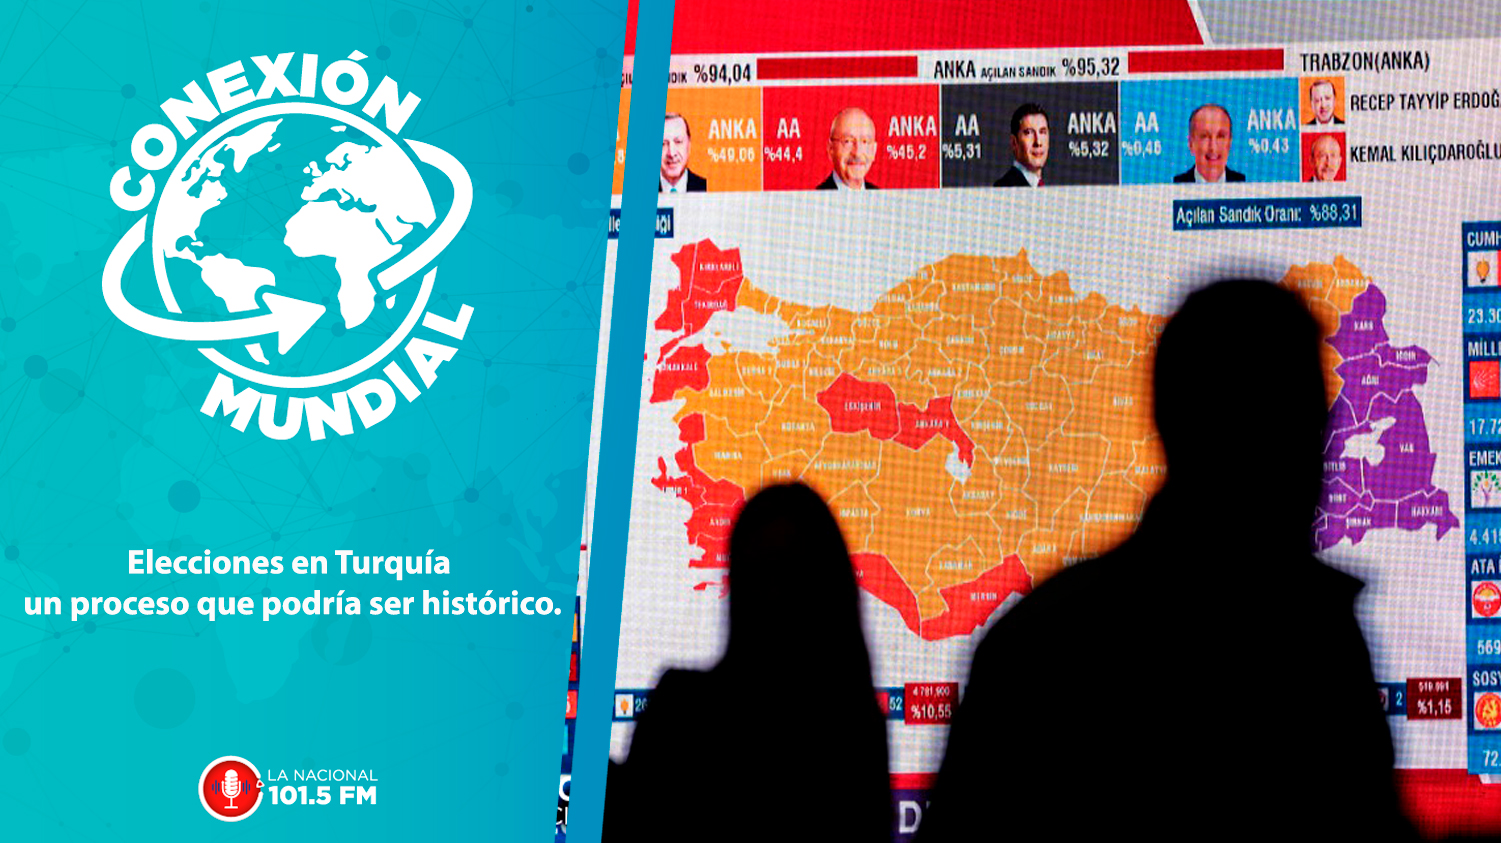 Elecciones en Turquía, un proceso que podría ser histórico.